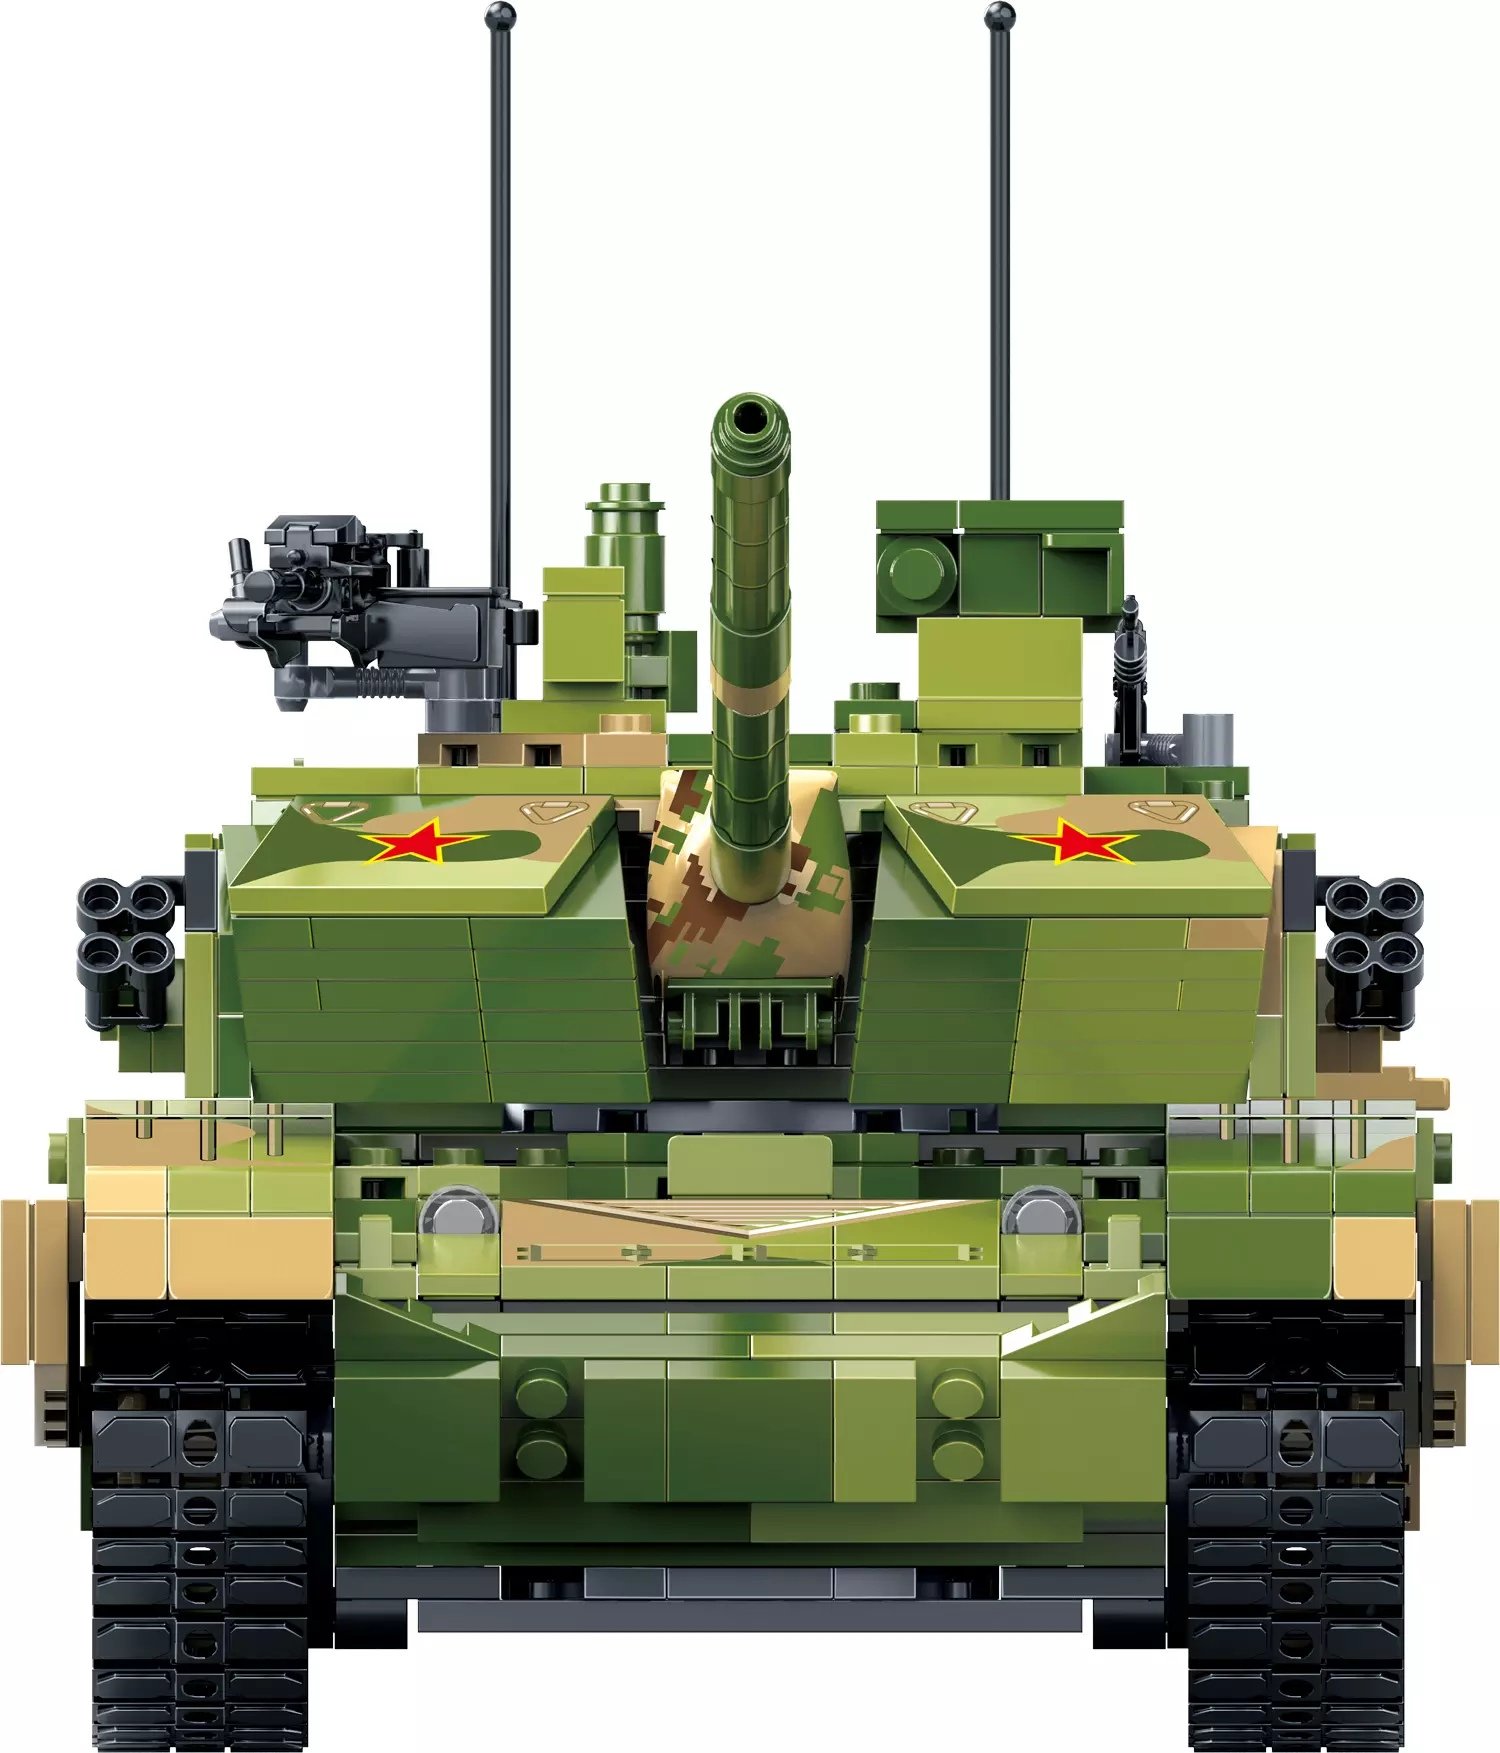 Ztz 99. Ztz99a. Танк ZTZ-99a. ZTZ 99a MBT. Китайский ZTZ-99.